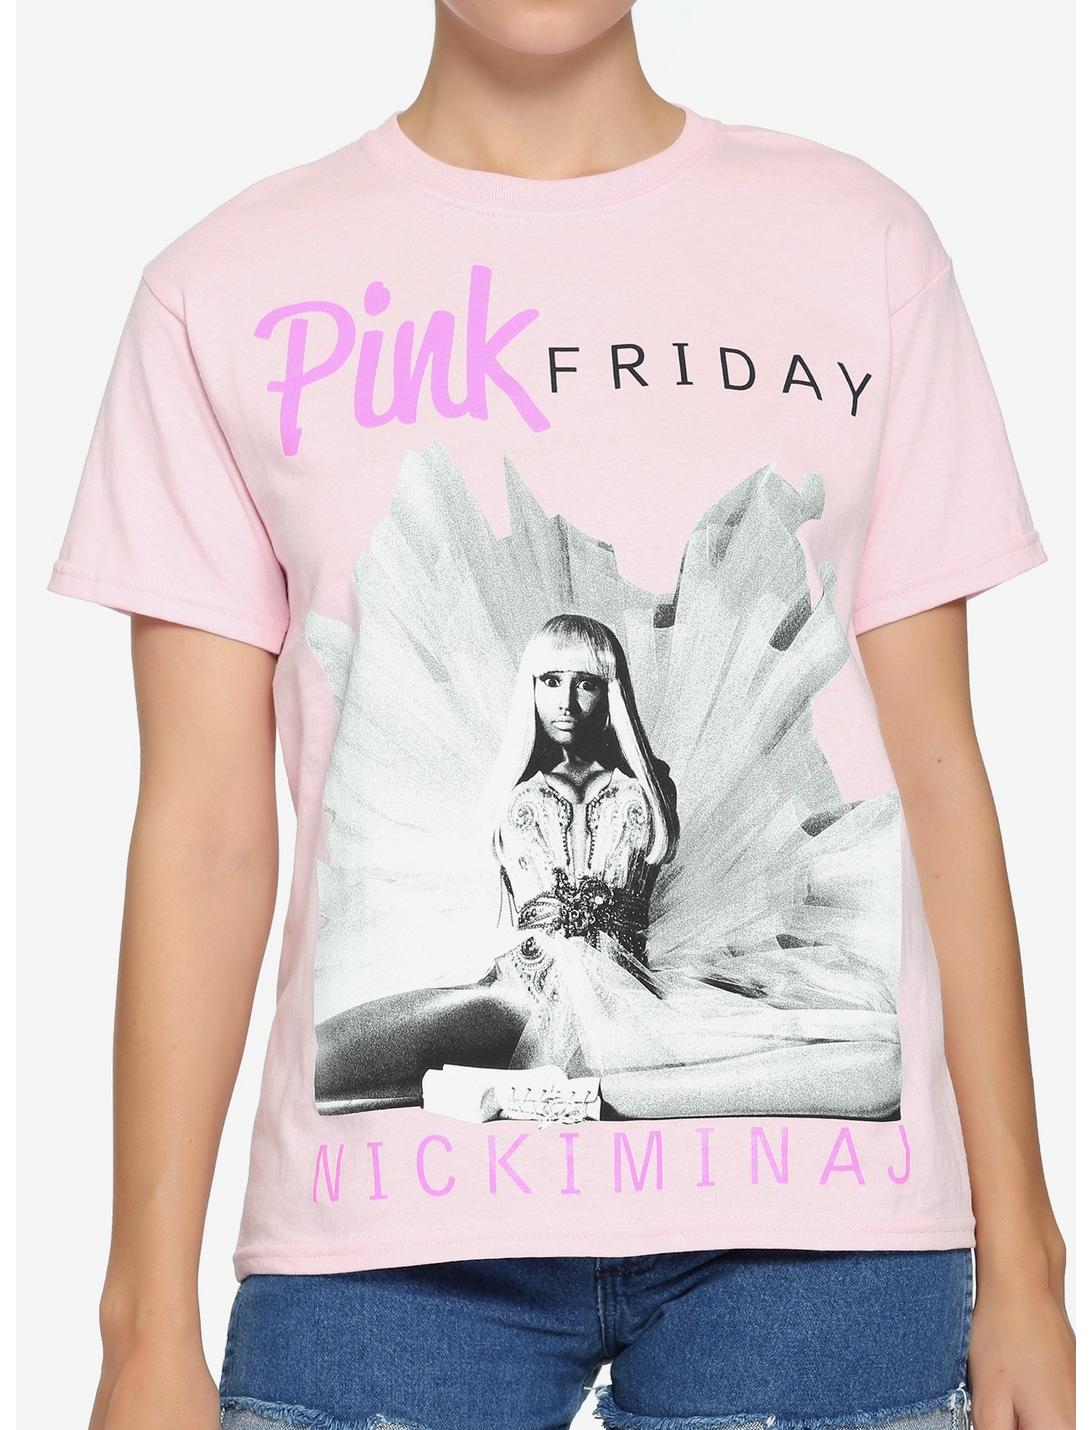 Nicki Minaj Pink Friday Boyfriend Fit Girls T-Shirt, PINK, hi-res